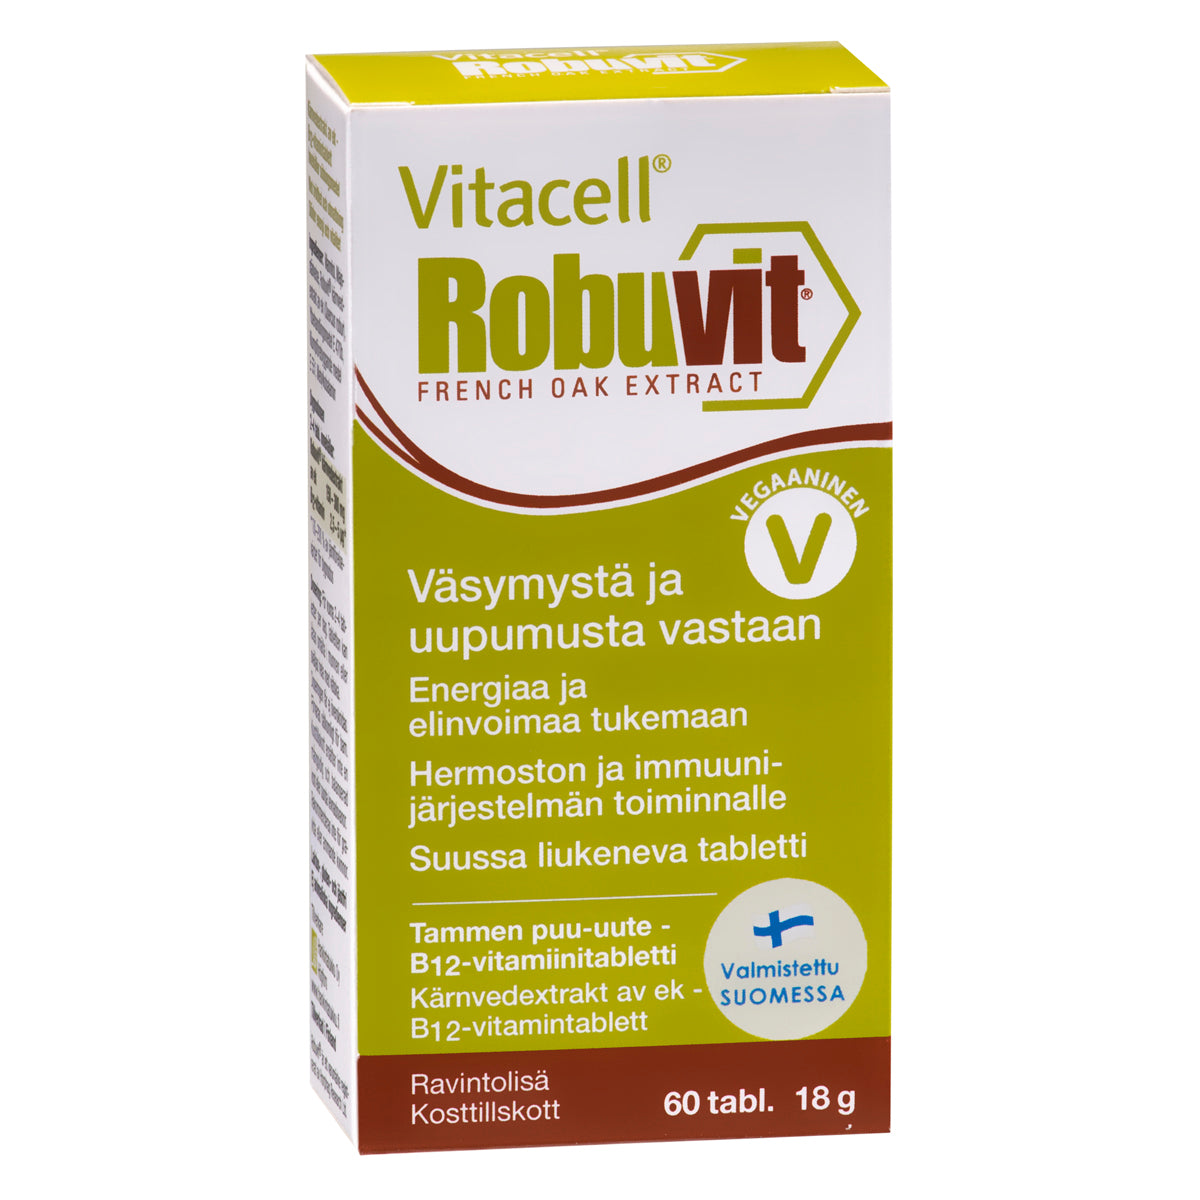 Vitacell Robuvit-Hankintatukku-Hyvinvoinnin Tavaratalo